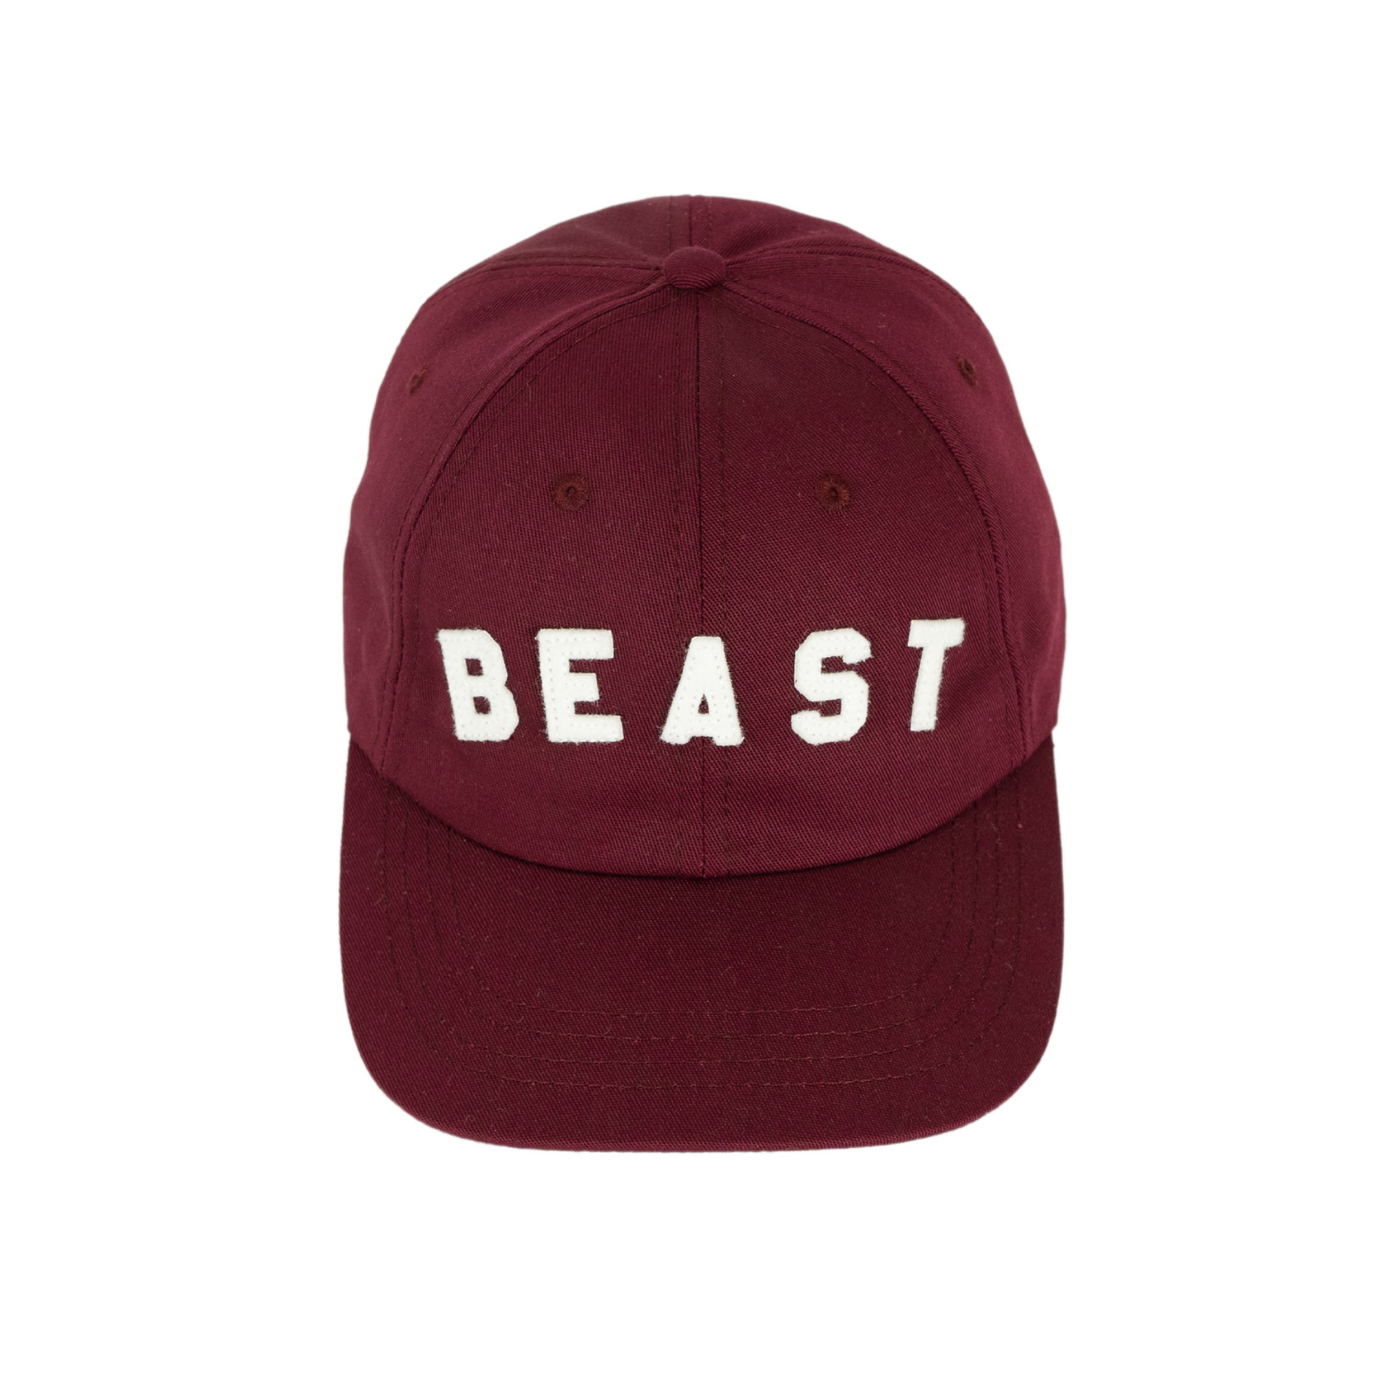 Eco-friendly cap BEAST series - Canada Beast - made in Canada- bear caps - casquette ours - casquette Canada